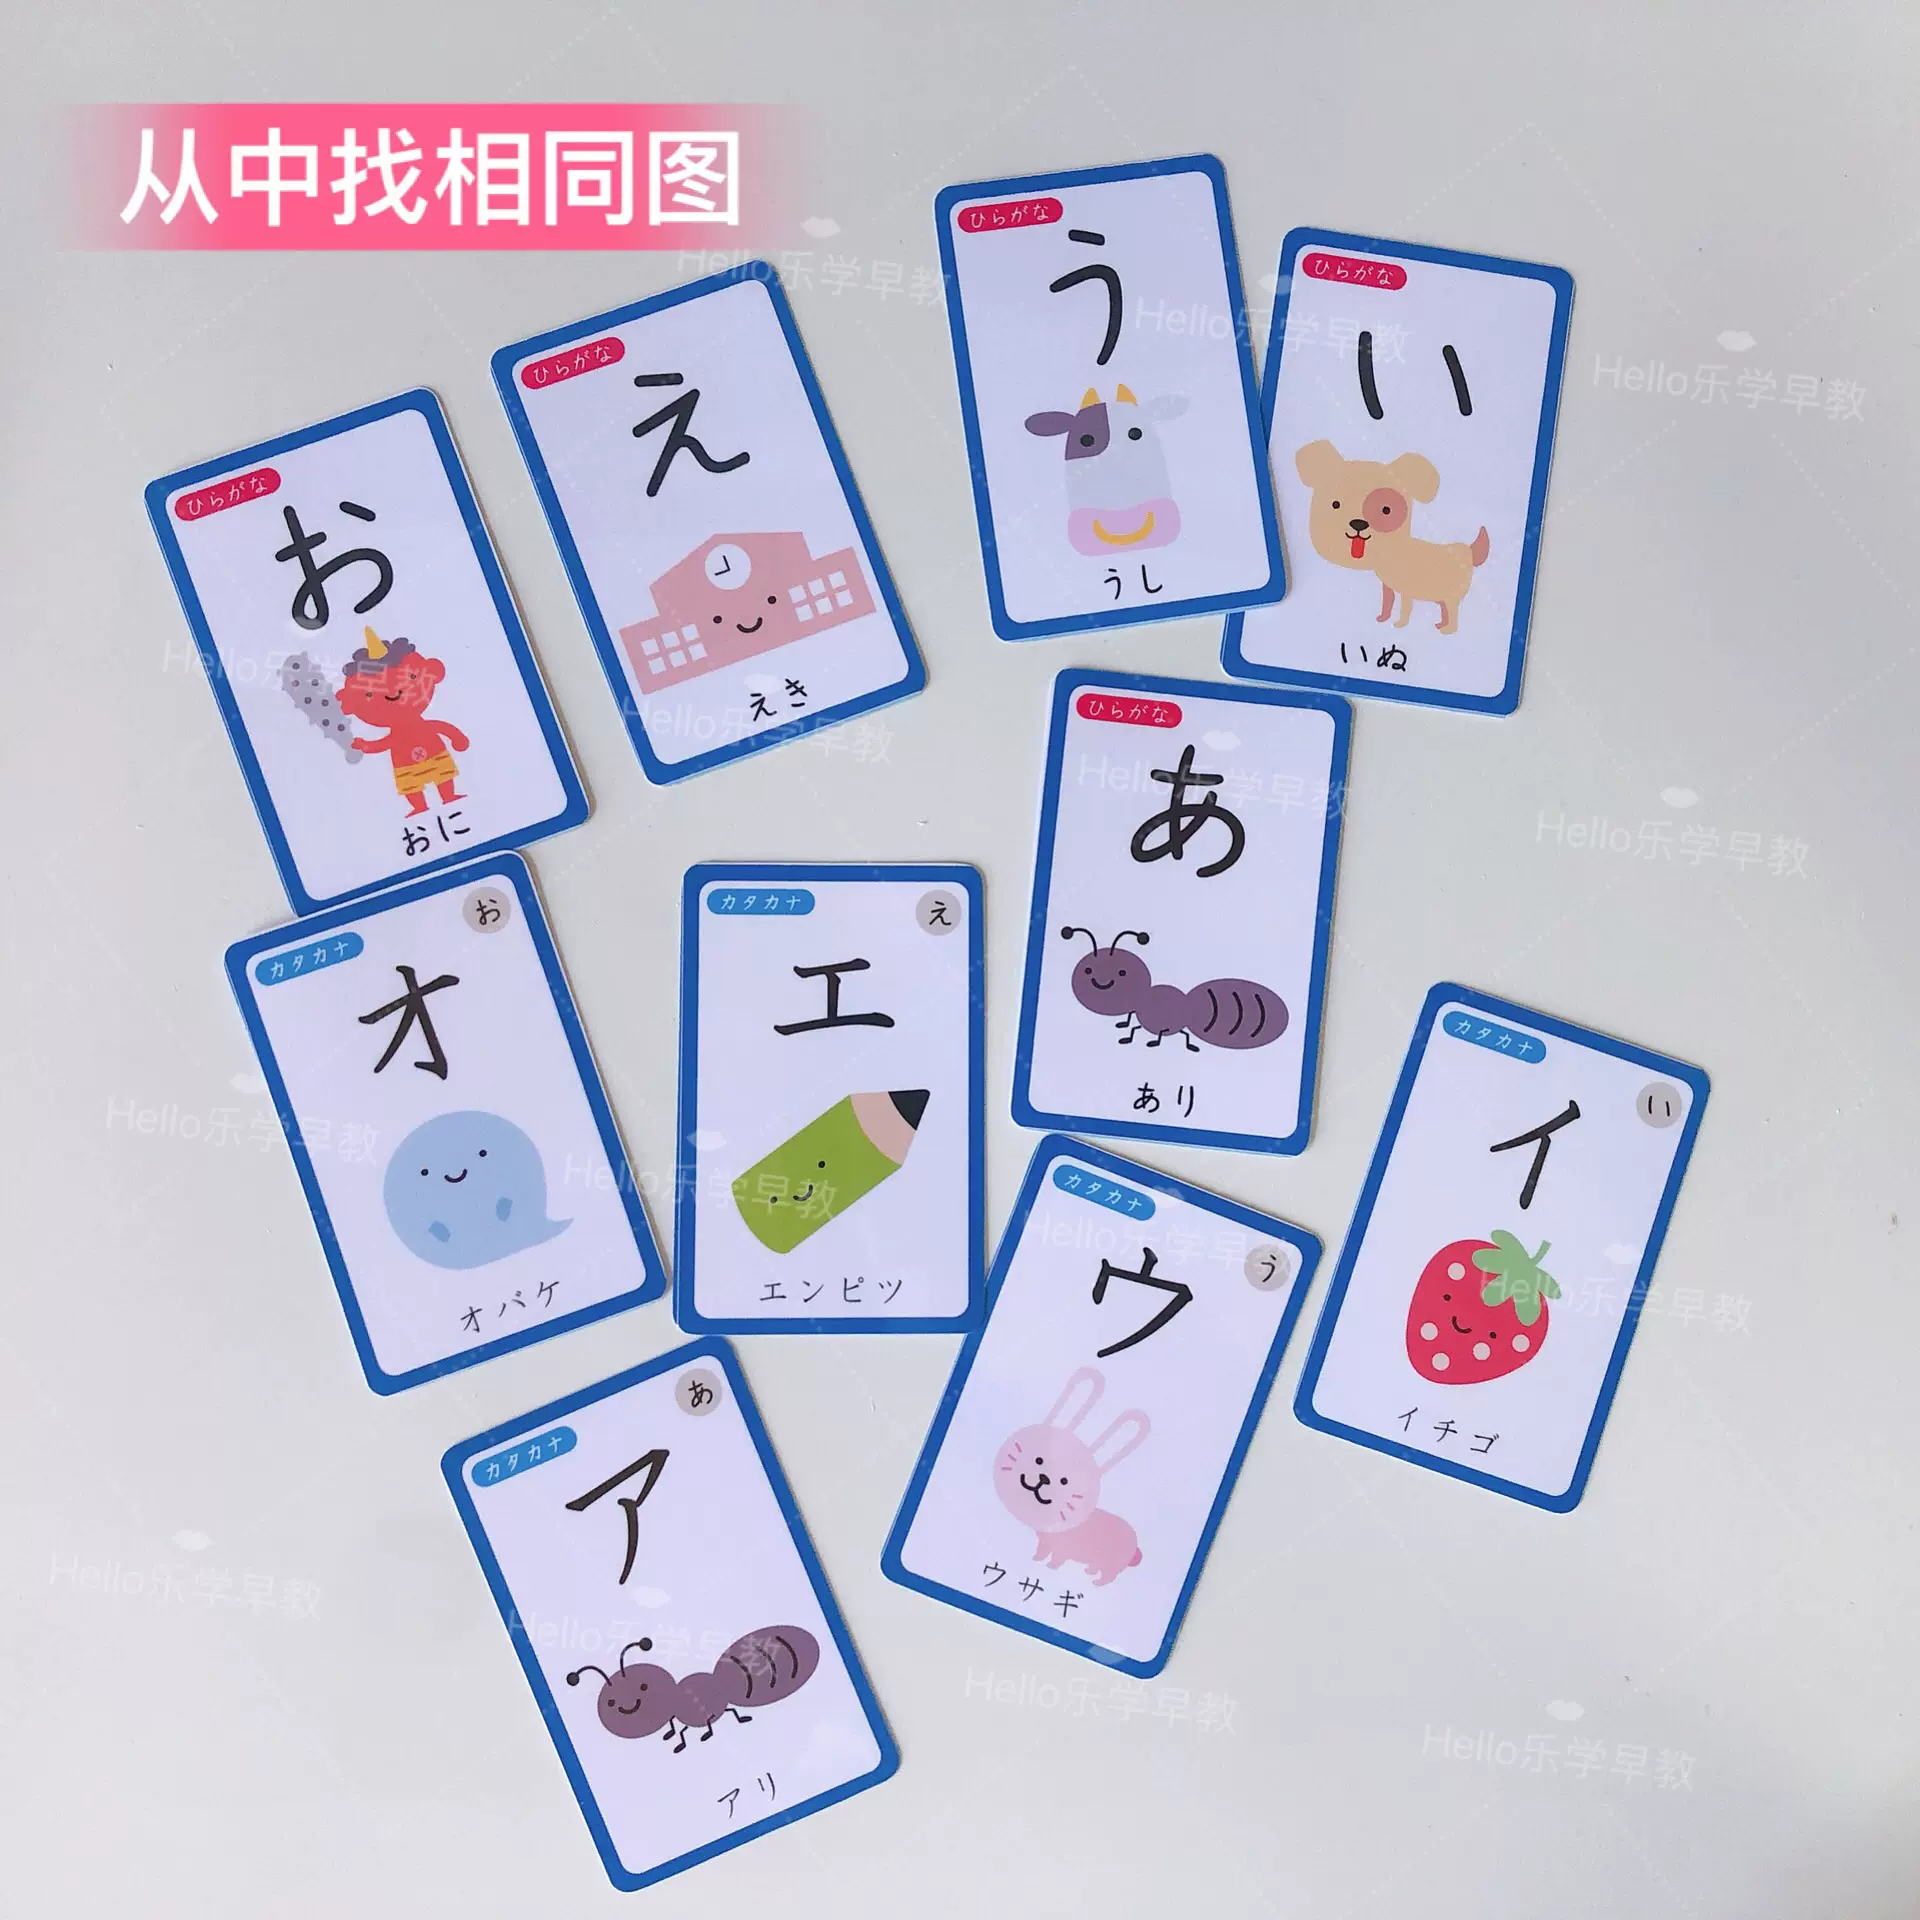 有音頻幼兒日語啟蒙50音中文雙語閃卡片五十音平假名濁音單字海報 Taobao